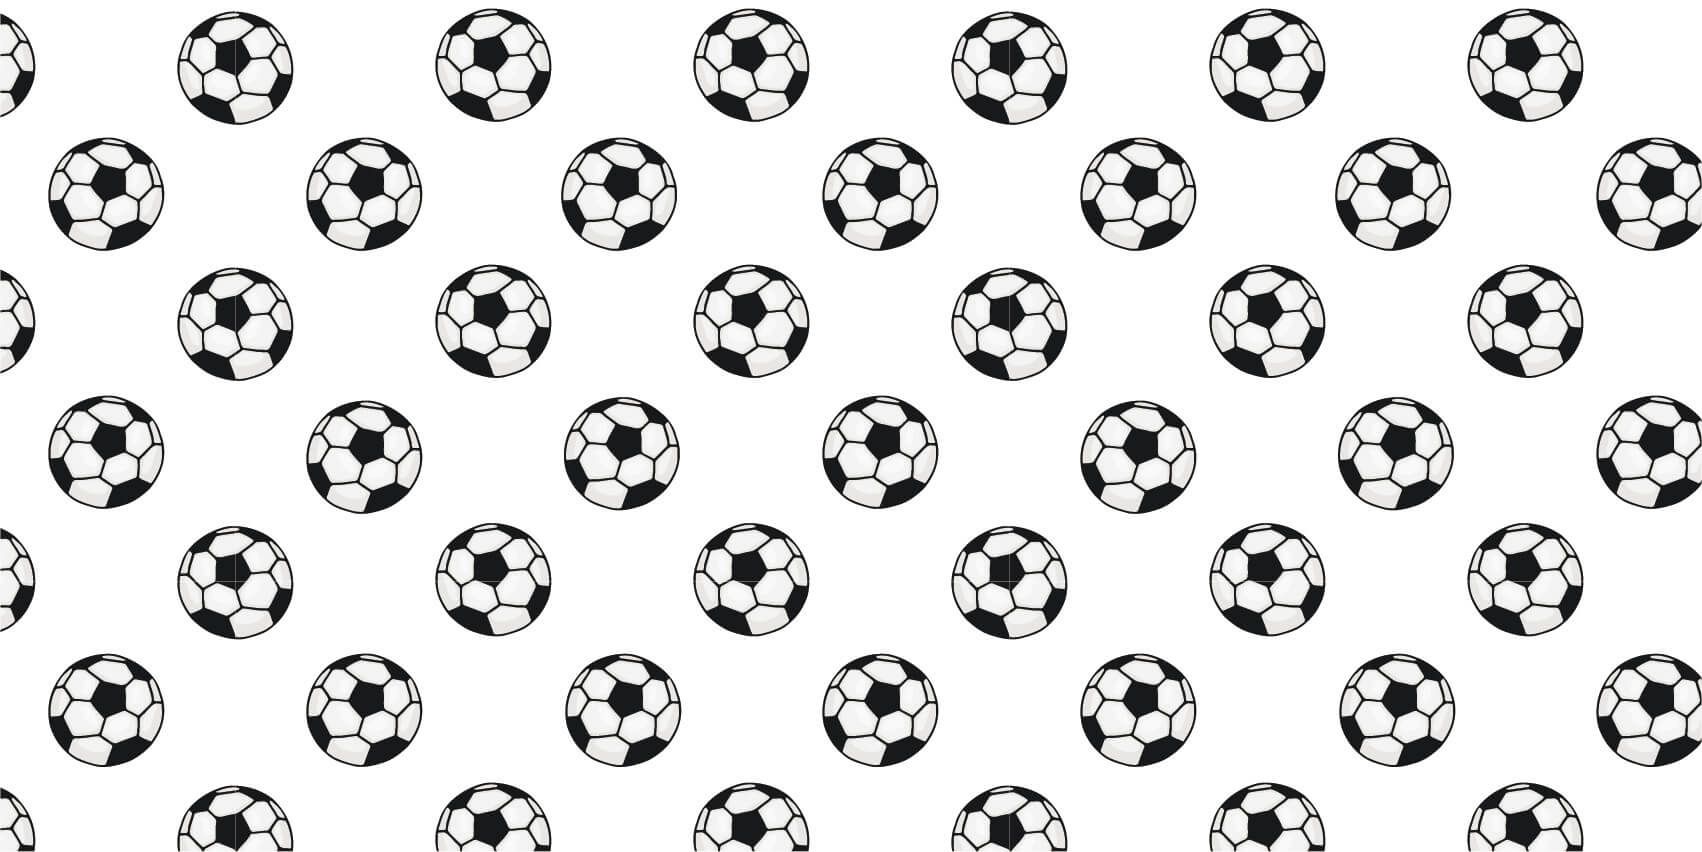 Fútbol - Papel pintado con Balones de fútbol - Habitación de niña